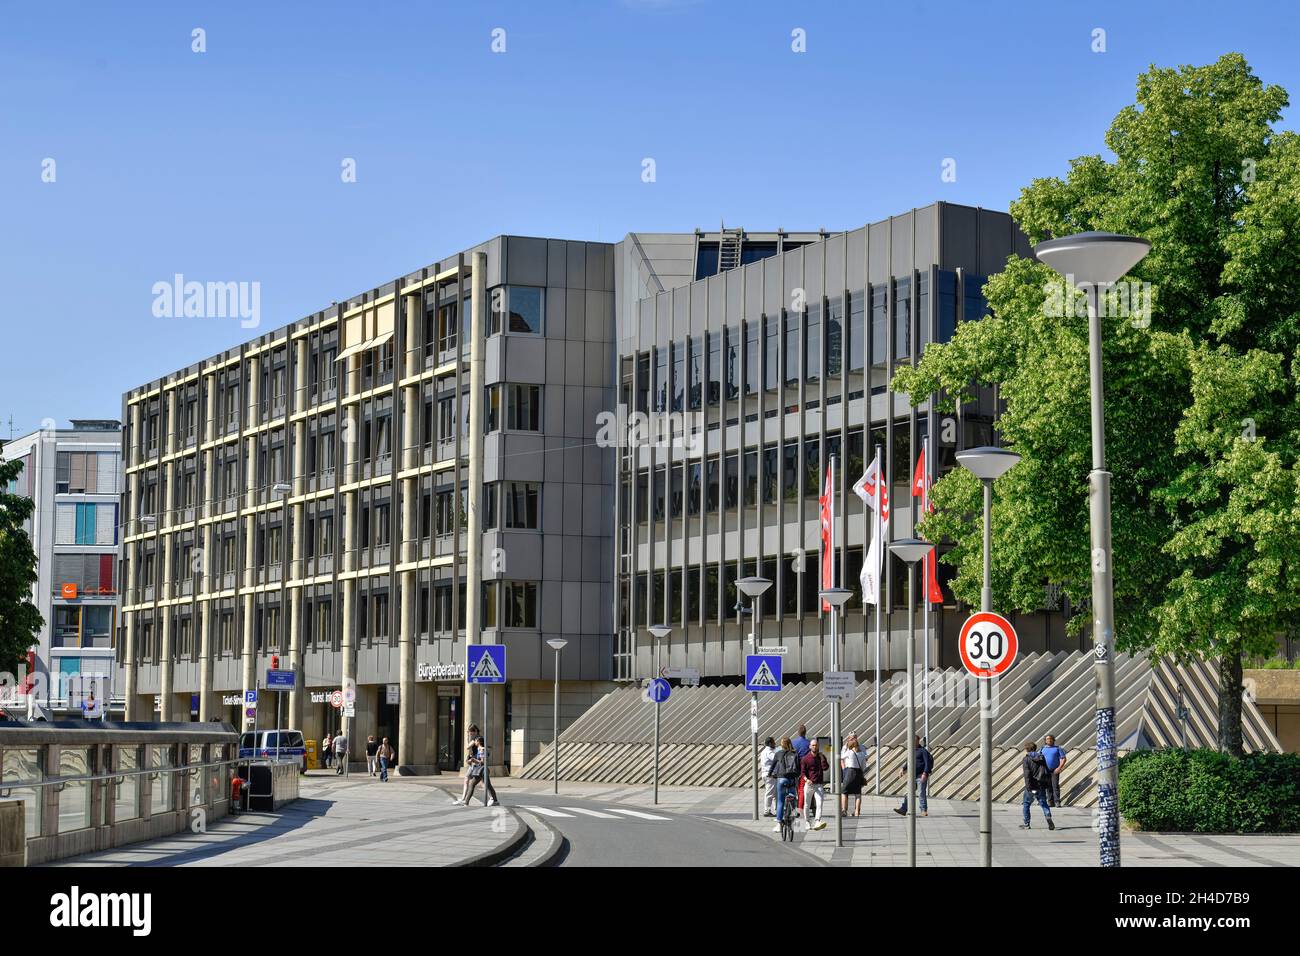 Neues Rathaus, Niederwall, Bielefeld, Nordrhein-Westfalen, Deutschland Stock Photo